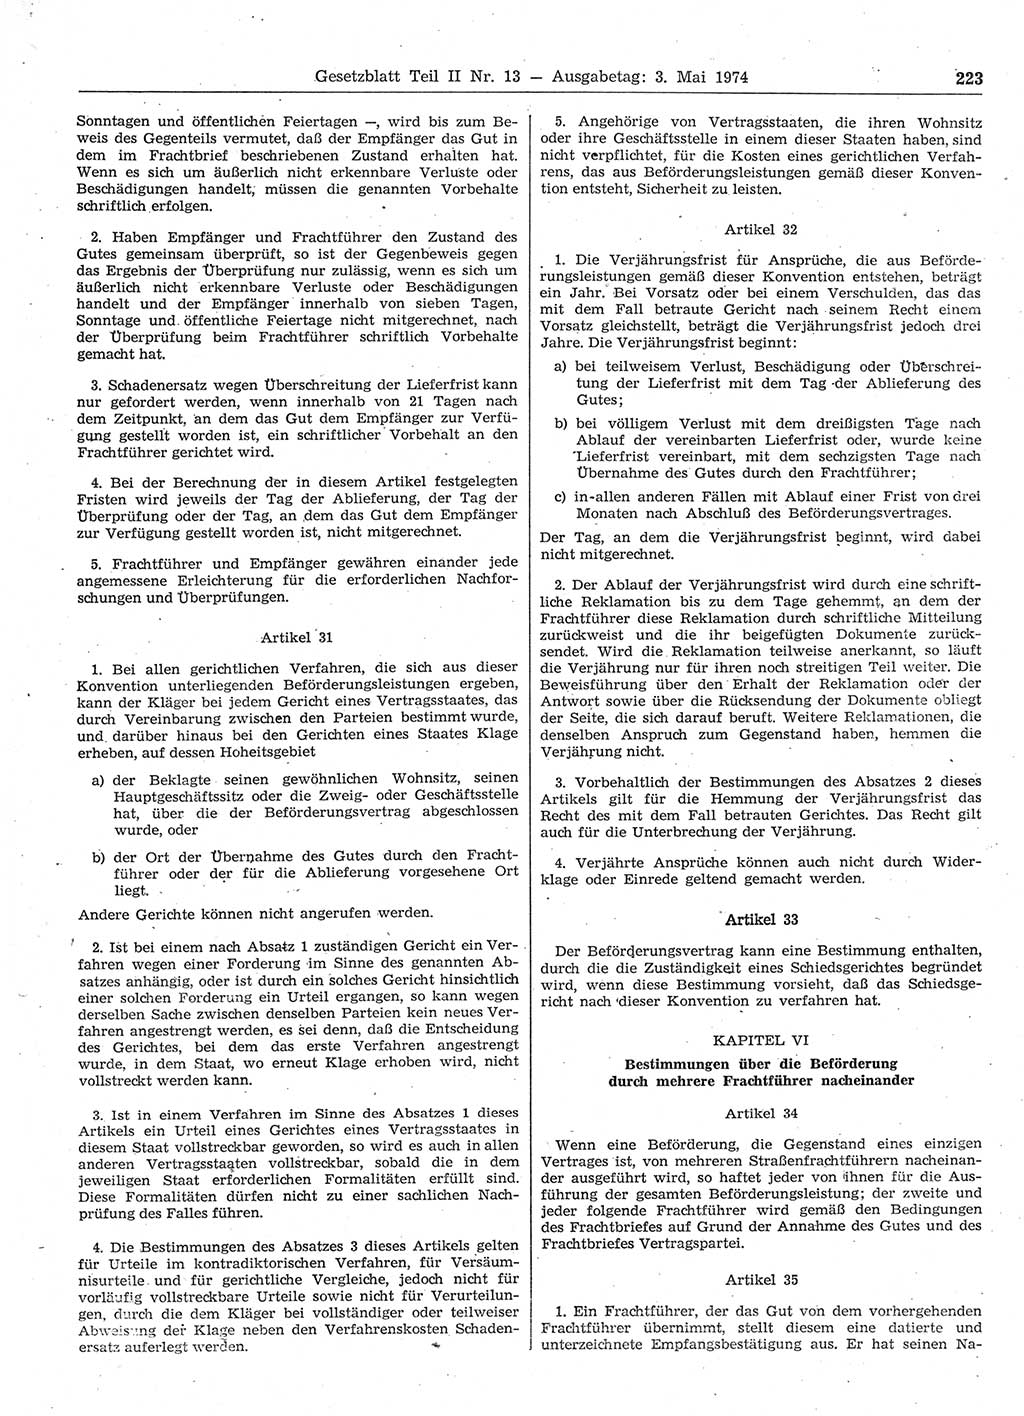 Gesetzblatt (GBl.) der Deutschen Demokratischen Republik (DDR) Teil ⅠⅠ 1974, Seite 223 (GBl. DDR ⅠⅠ 1974, S. 223)